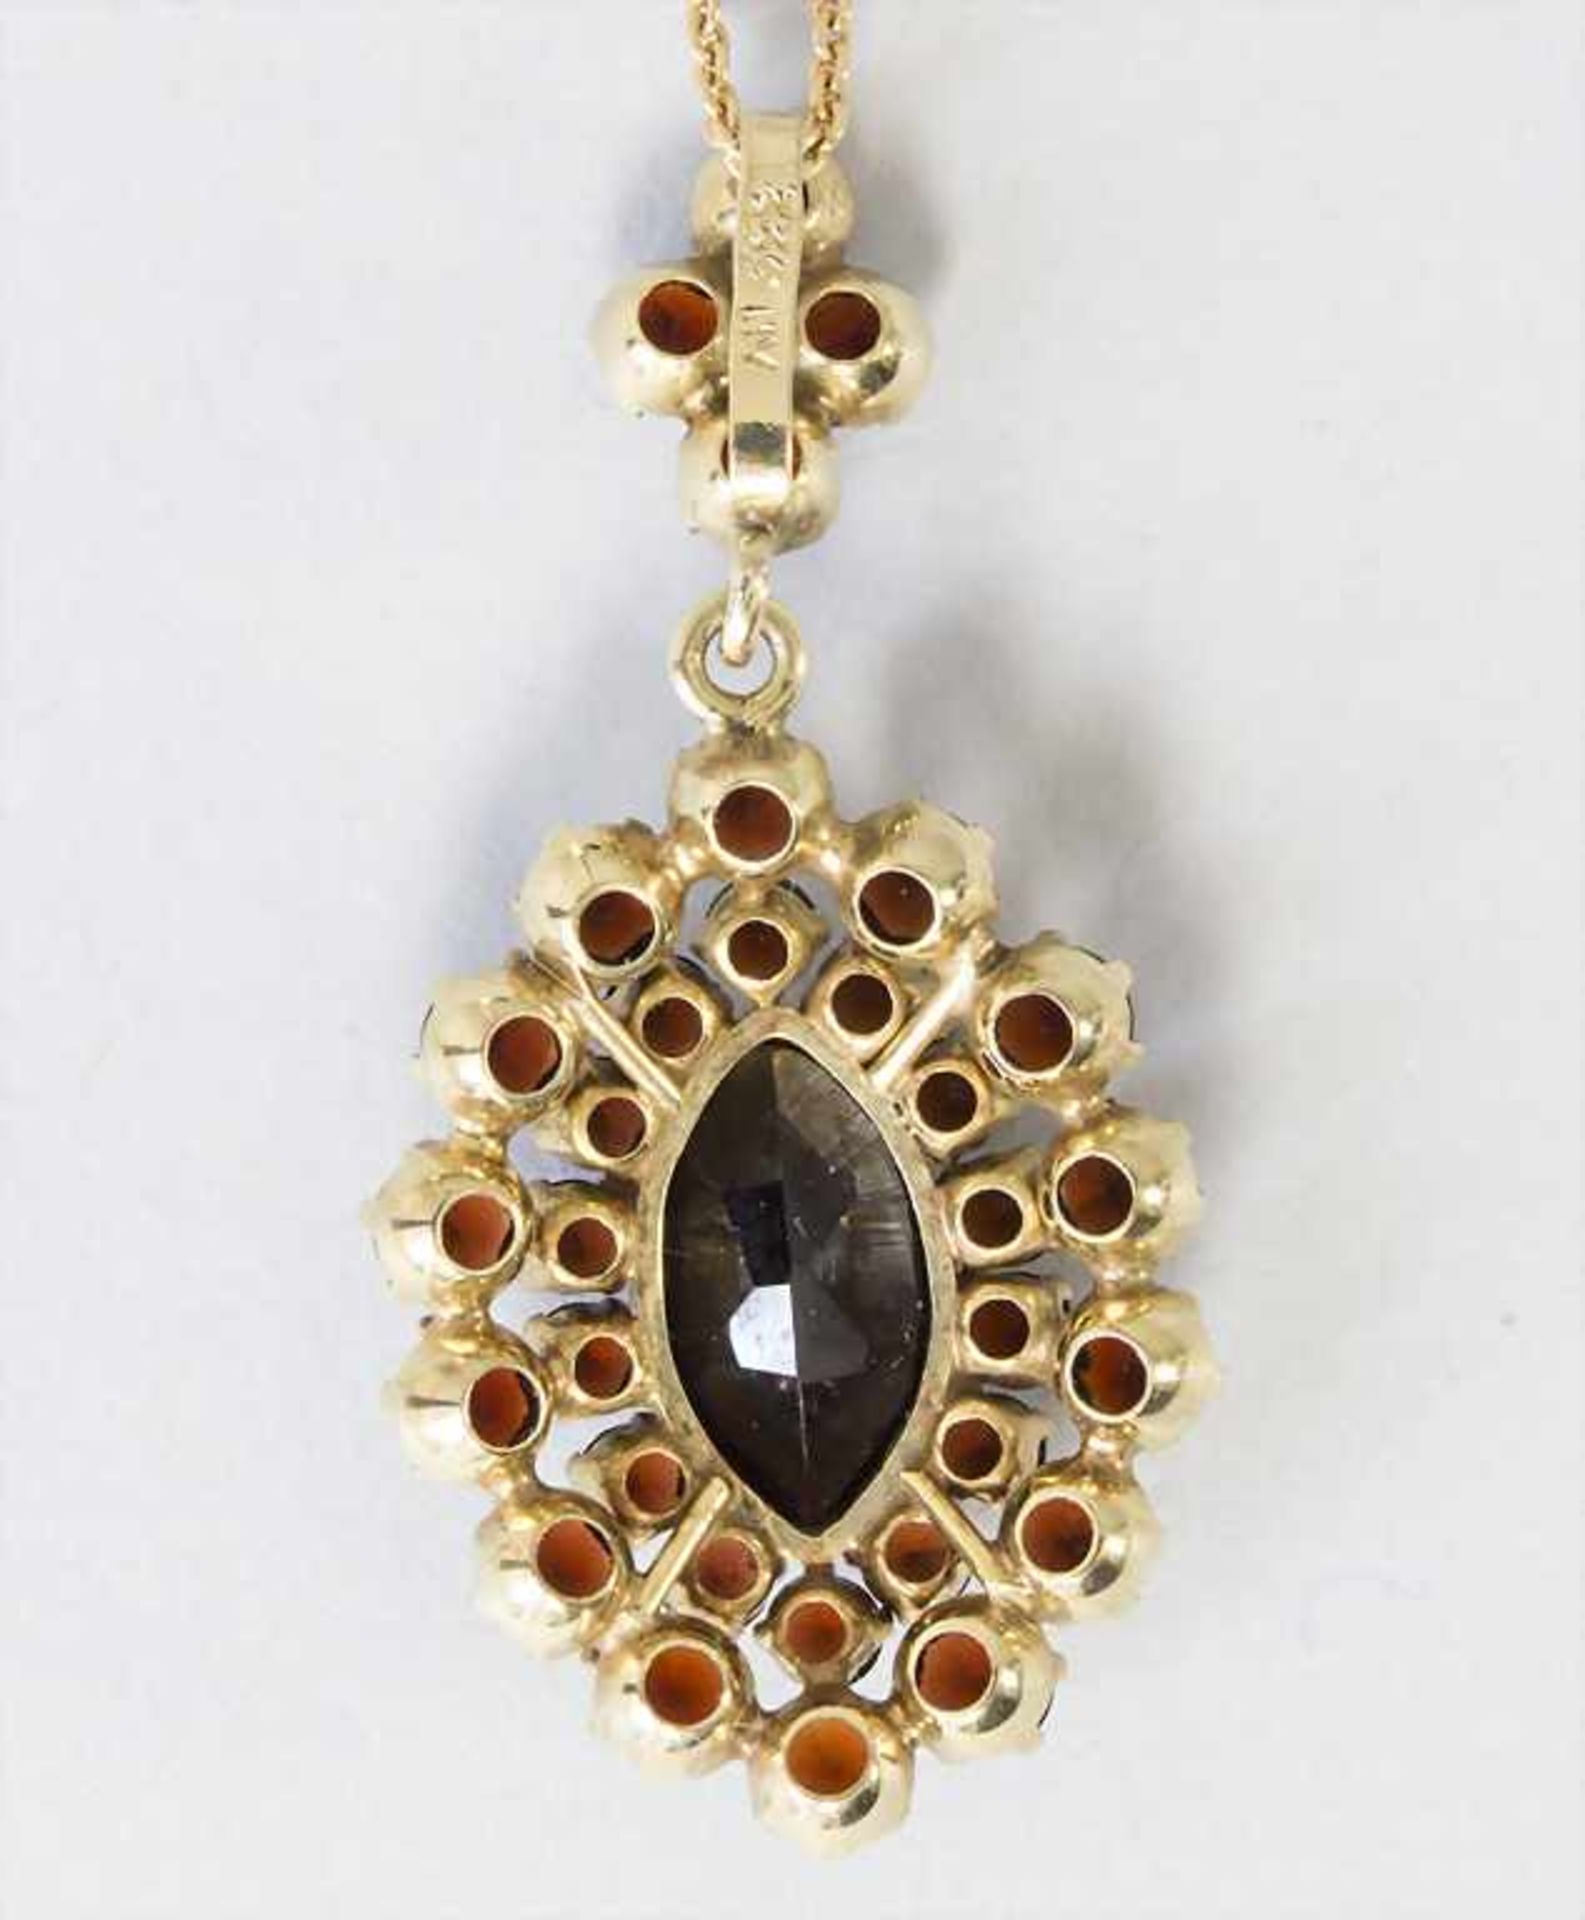 Goldkette mit Granatanhänger / A gold necklace with garnet pendant - Bild 2 aus 3